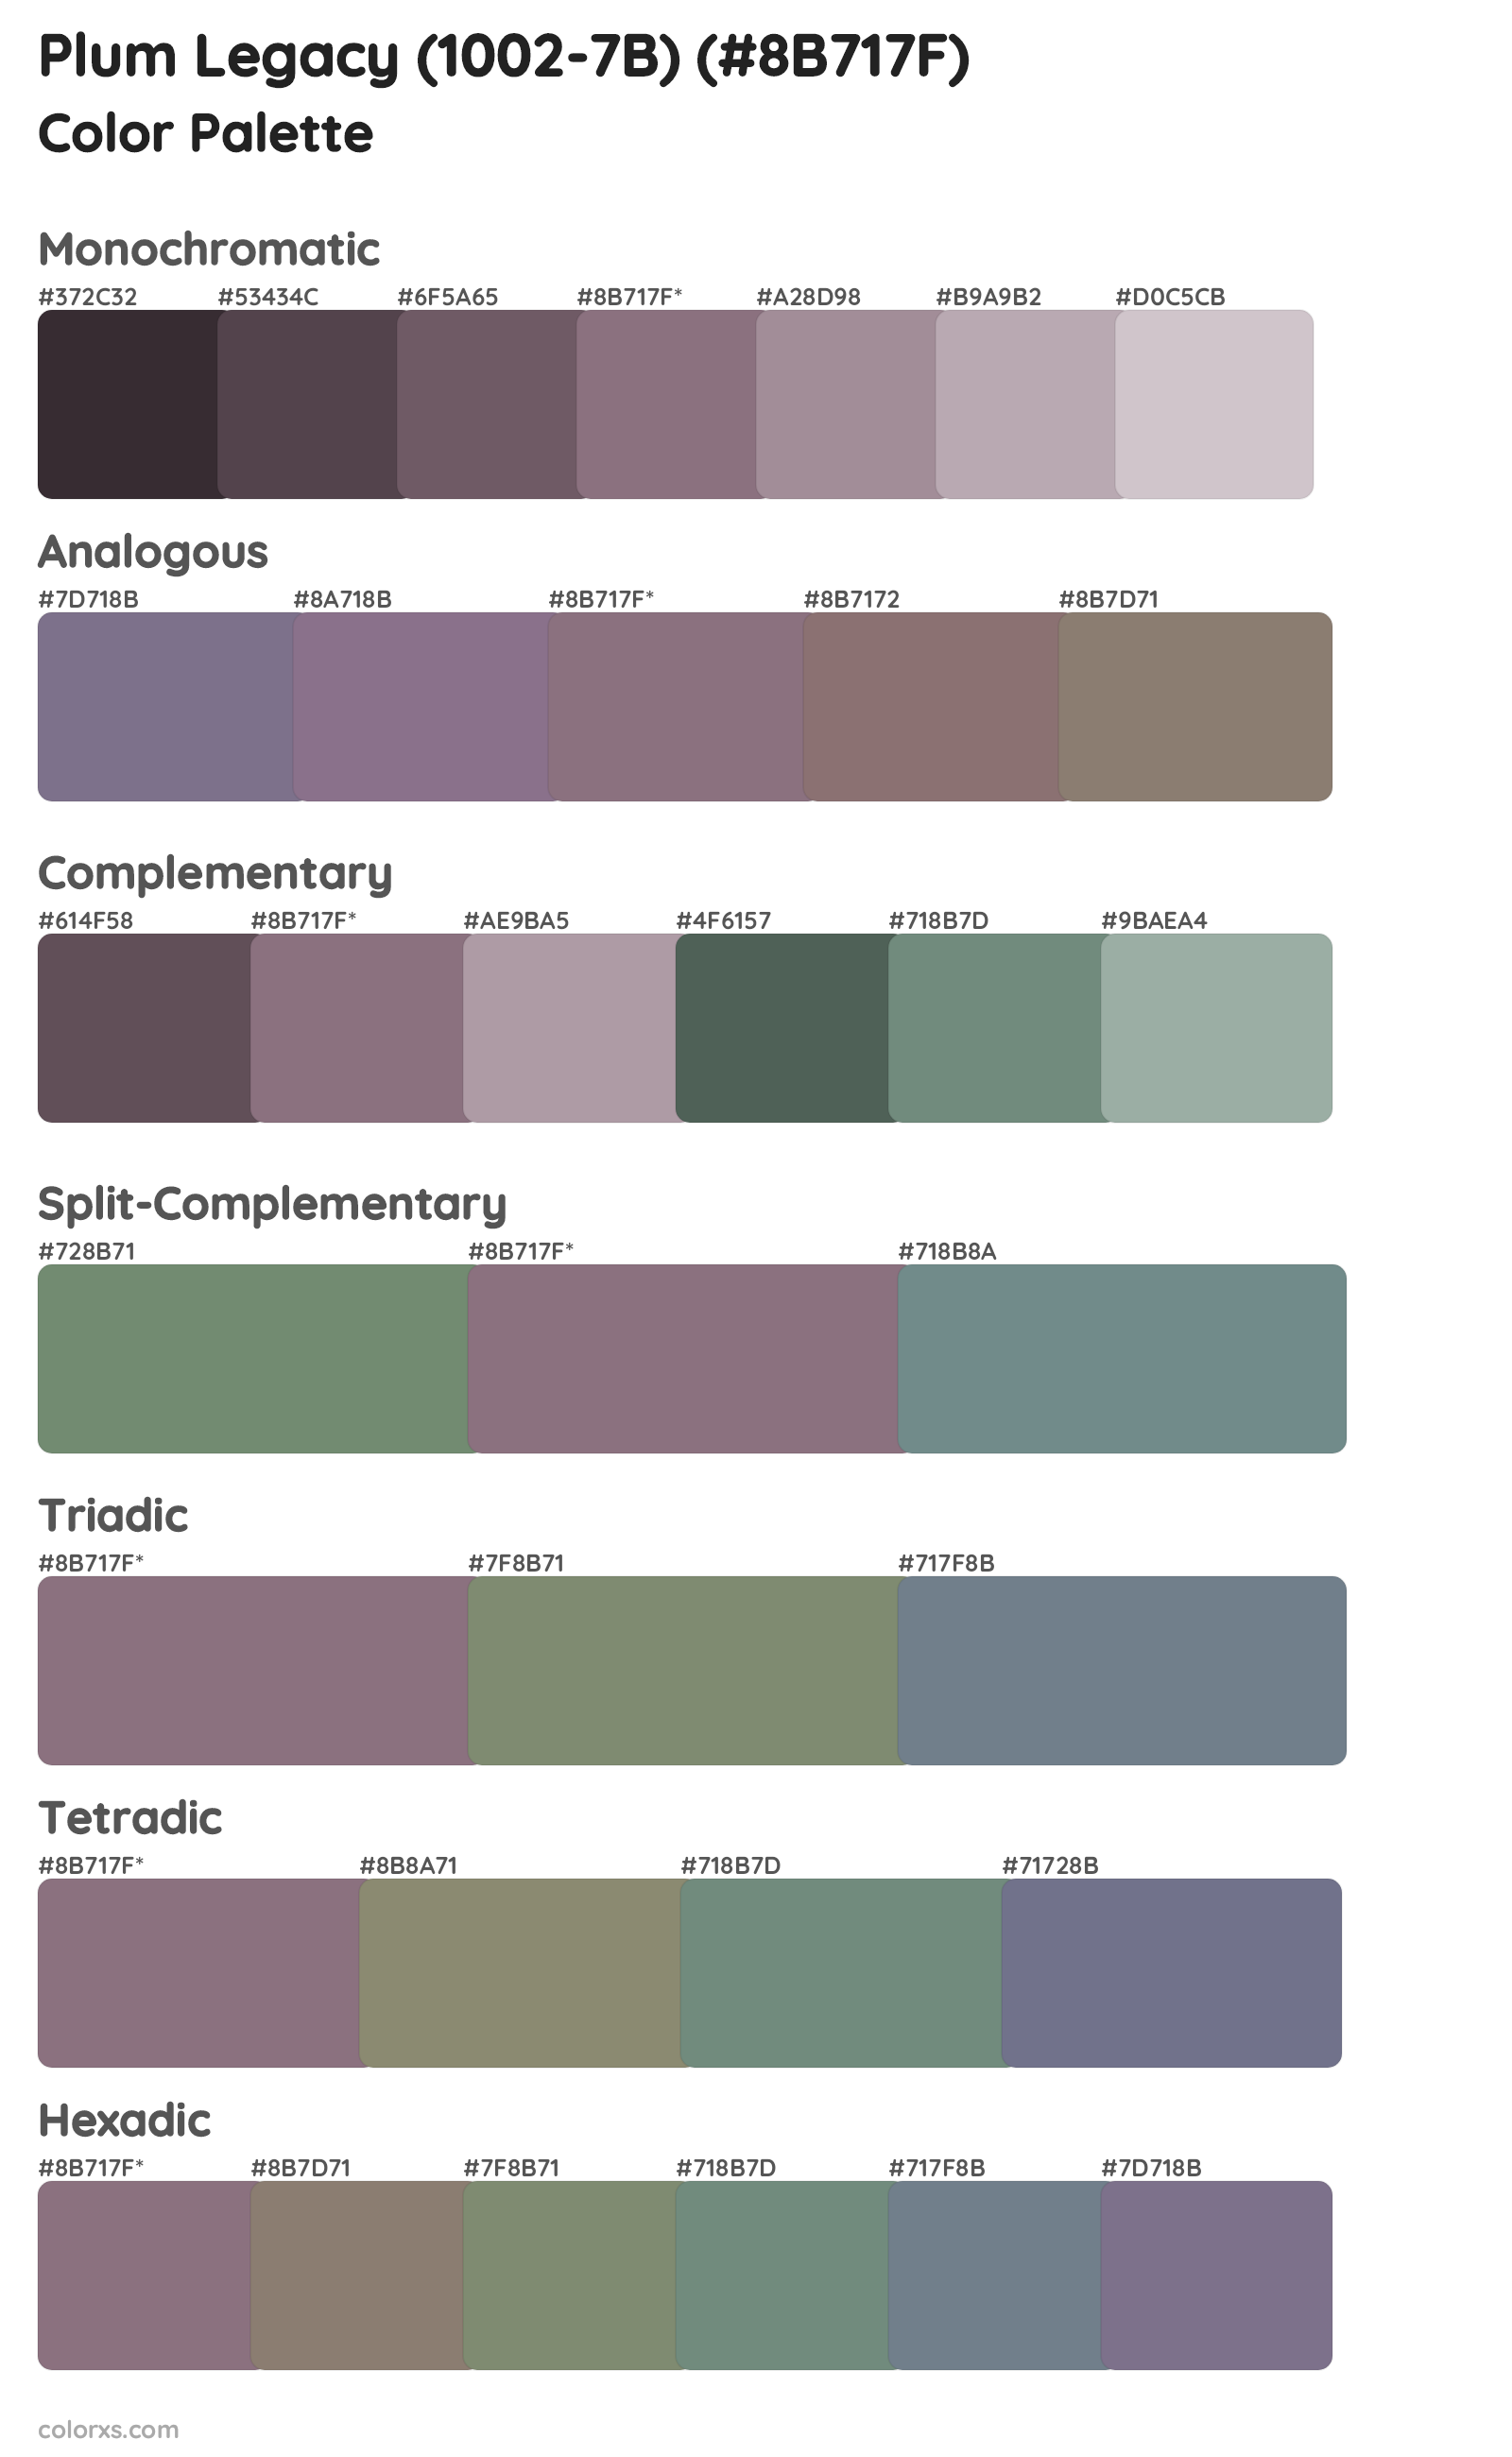 Plum Legacy (1002-7B) Color Scheme Palettes